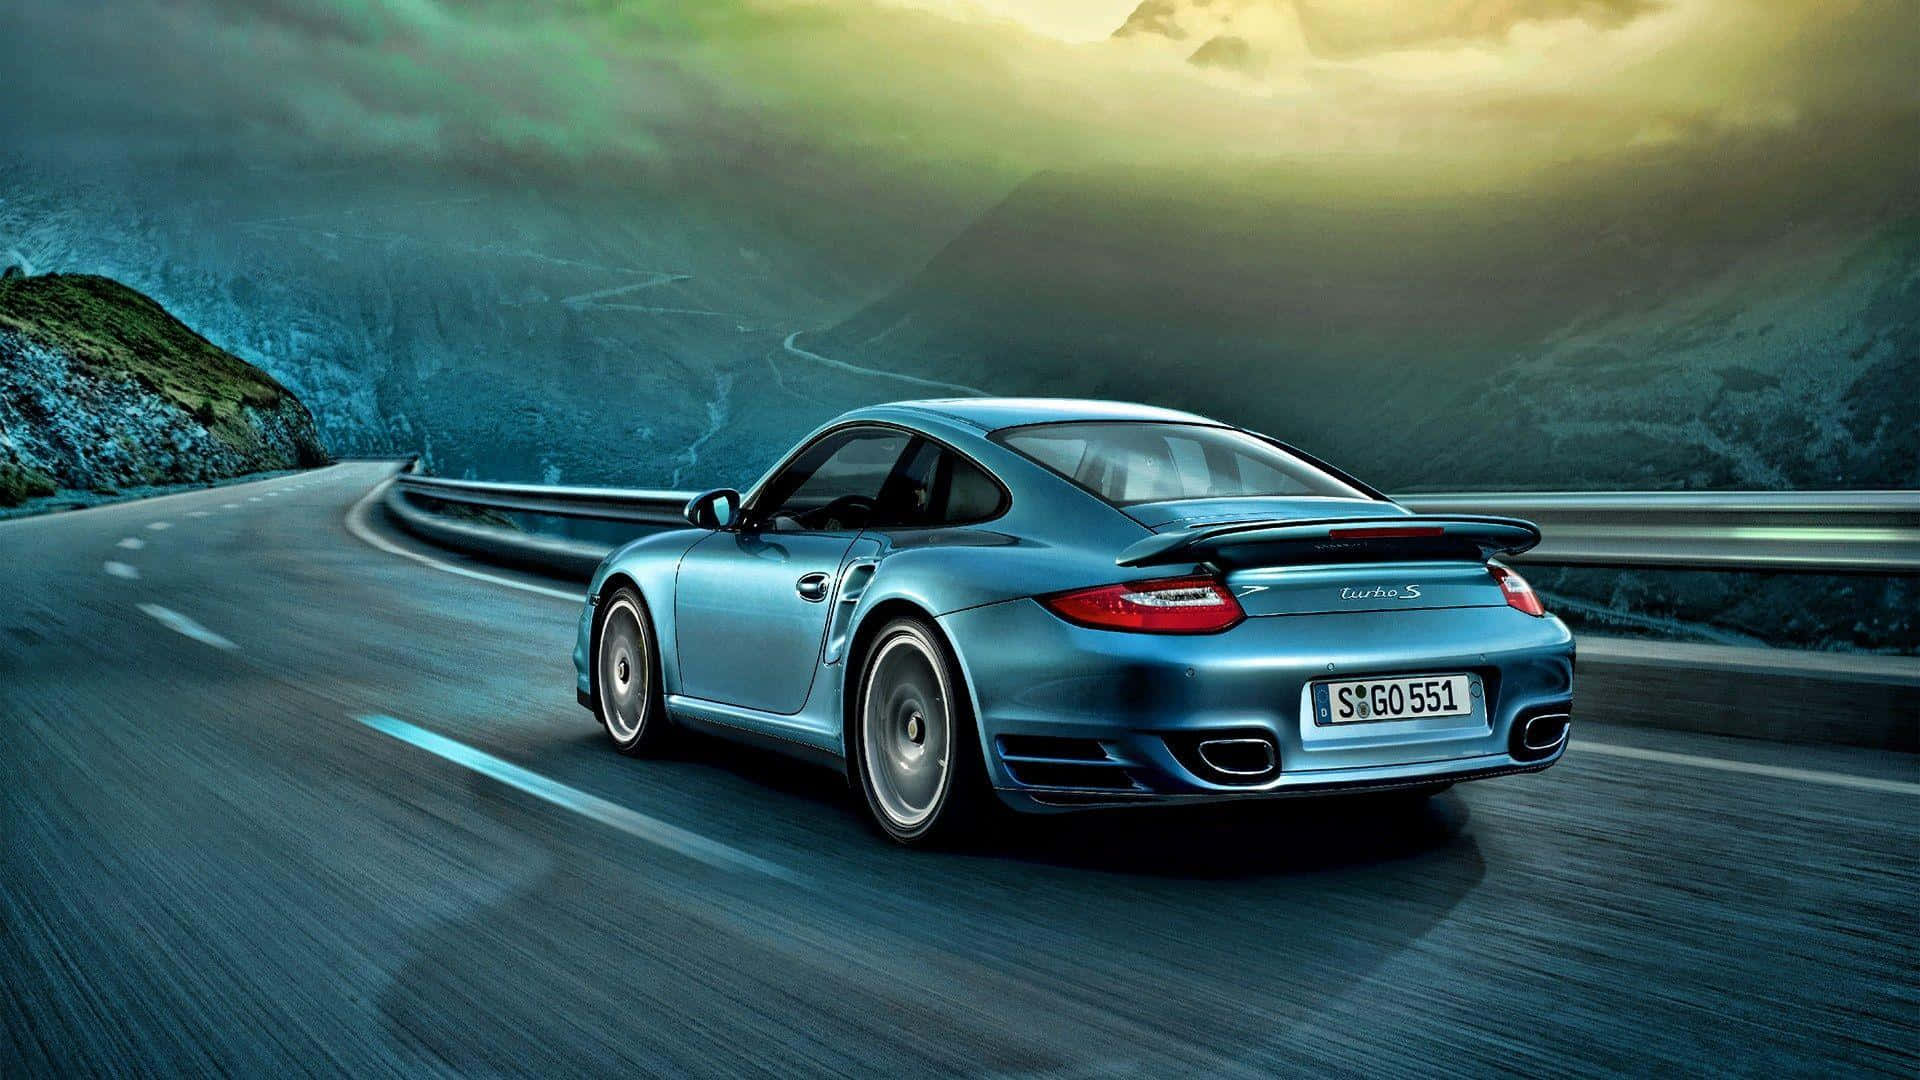 Eleganteautomóvil Deportivo Porsche En Movimiento